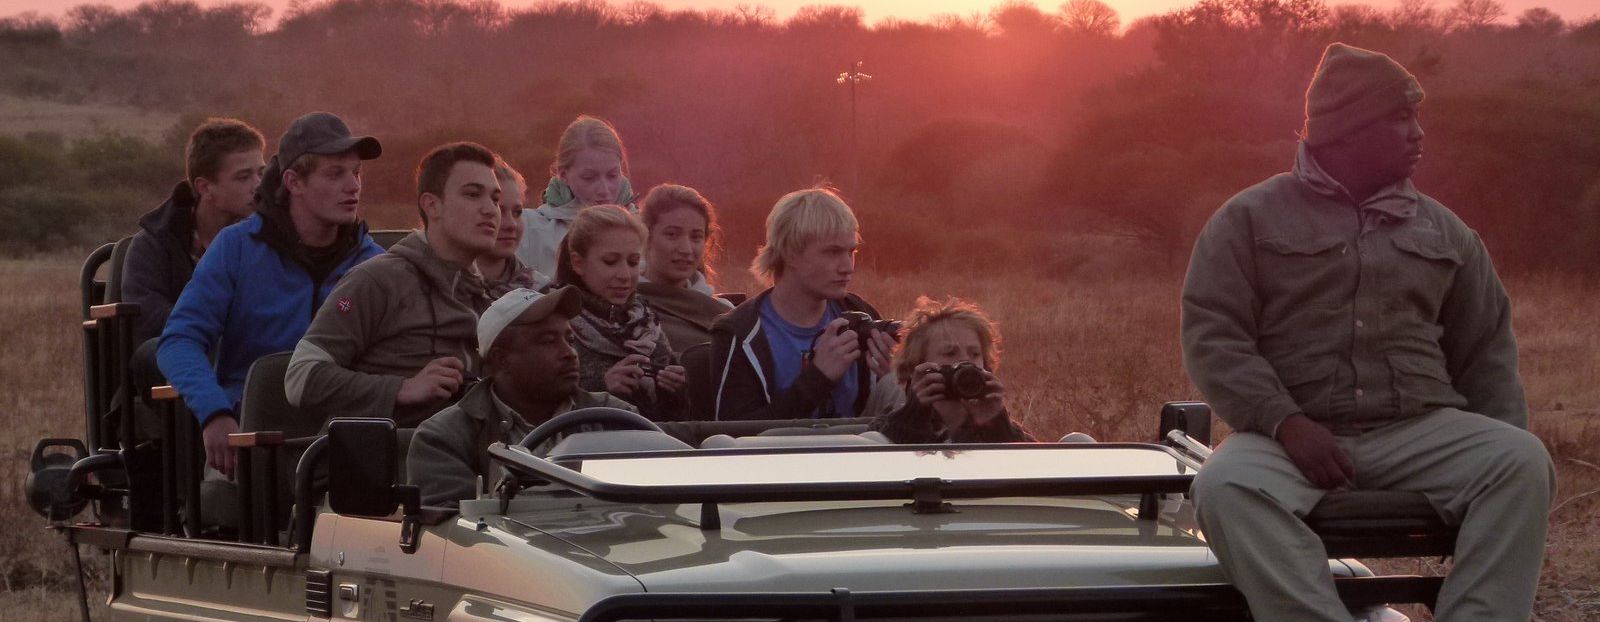 Südafrika Familienreise - Teenager im Jeep